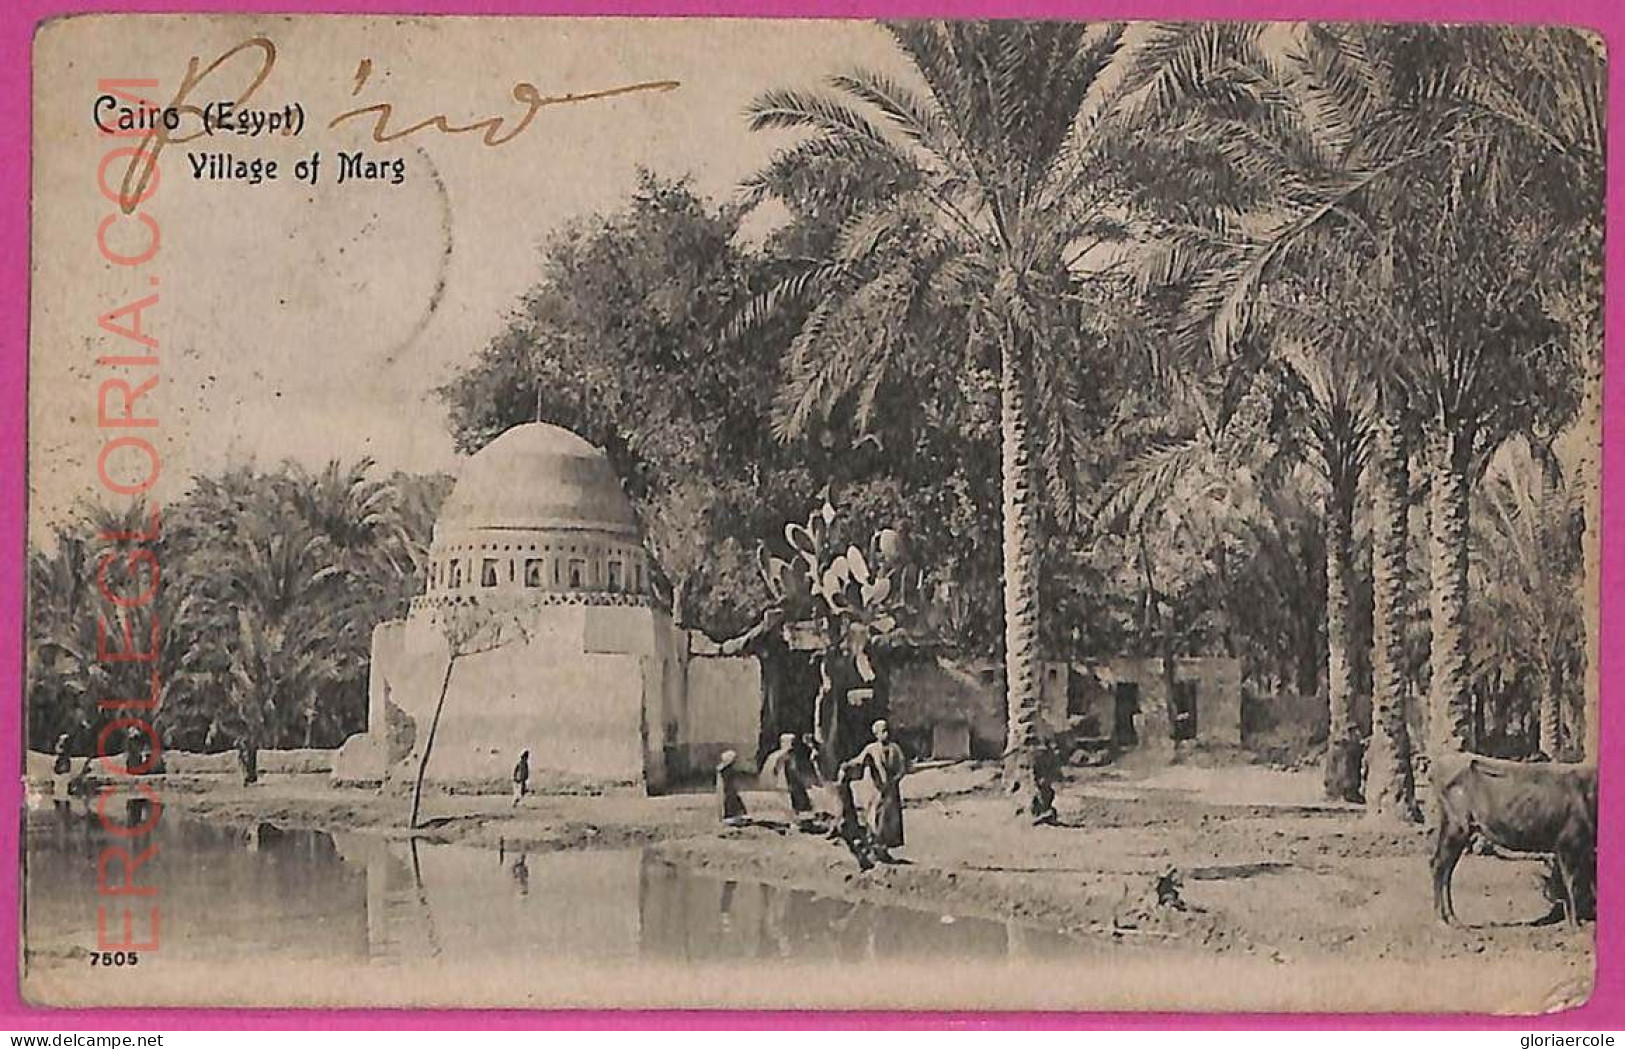 Ag3031 - EGYPT - VINTAGE POSTCARD - Cairo - 1905 - Le Caire